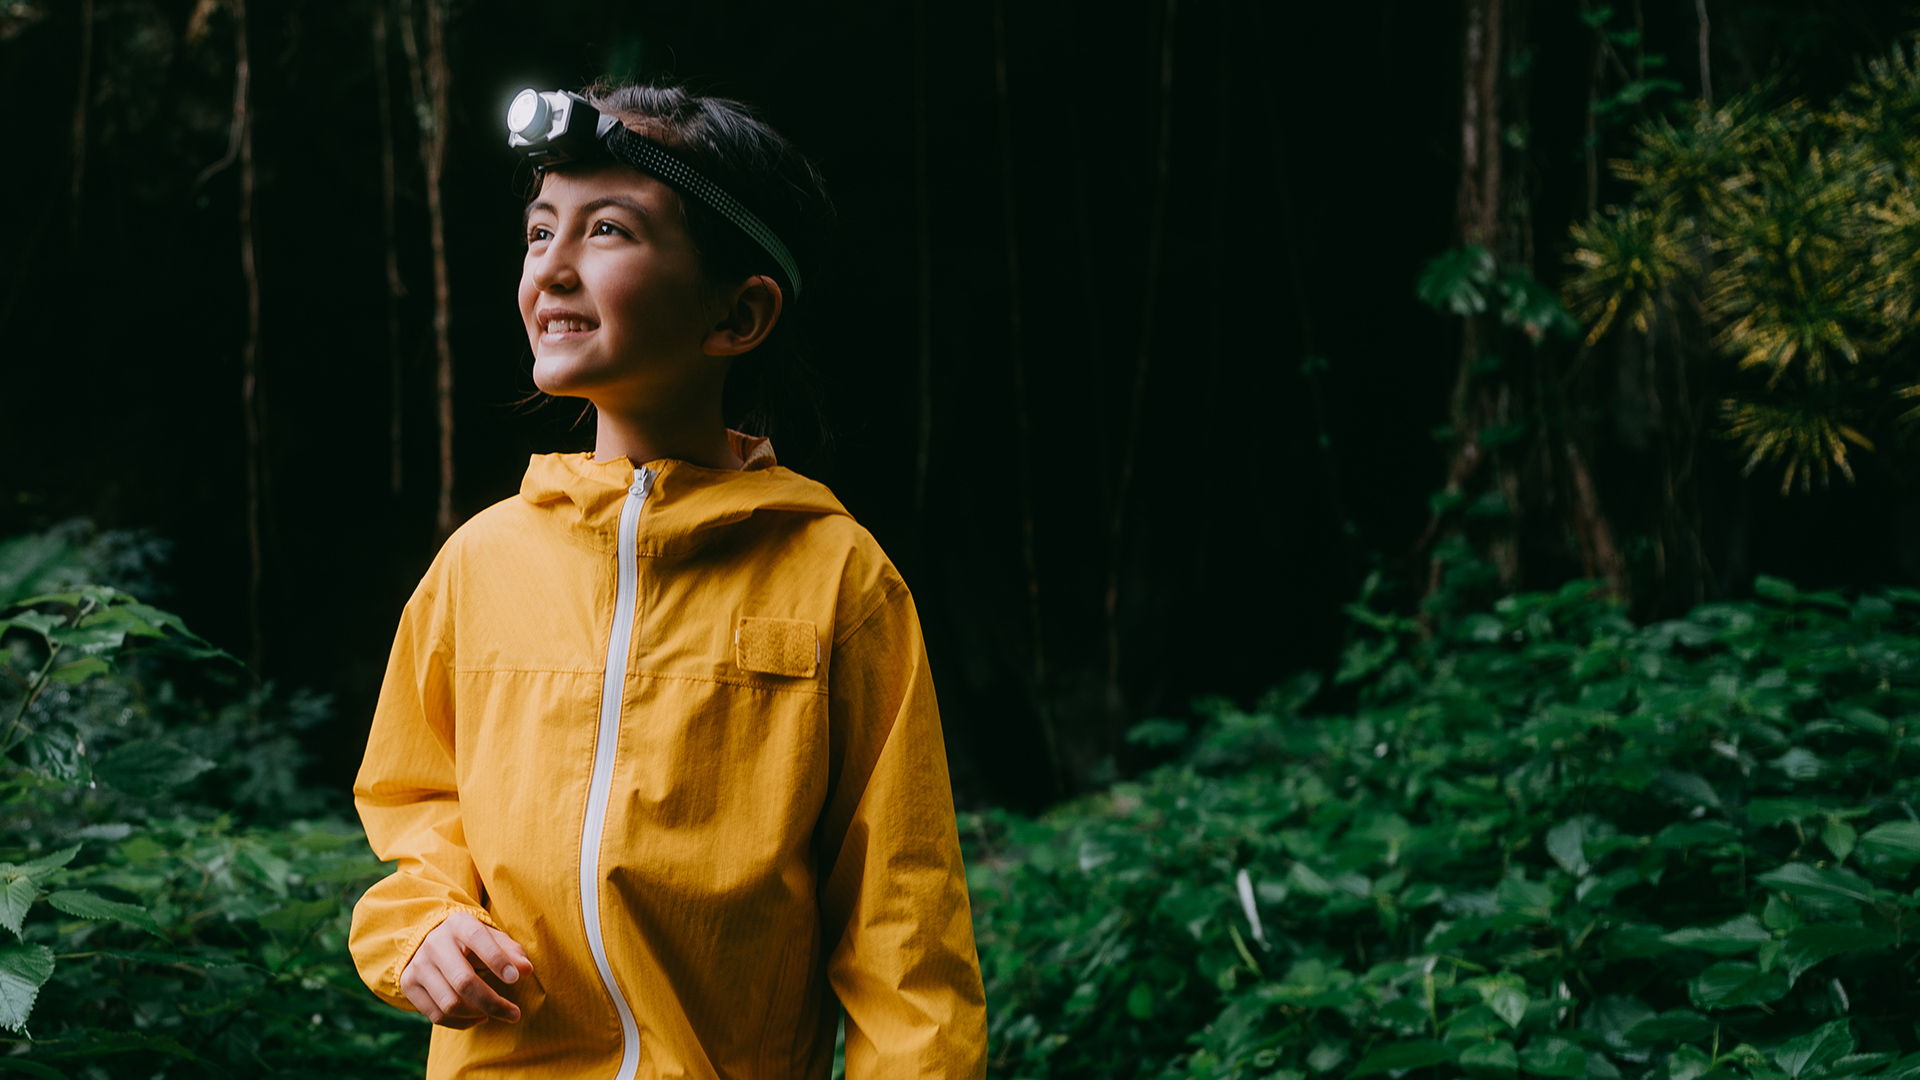 Ein Mädchen steht mit einer gelben Regenjacke im Wald und hat eine Taschenlampe auf dem Kopf und schaut zufrieden in den Wald rein.